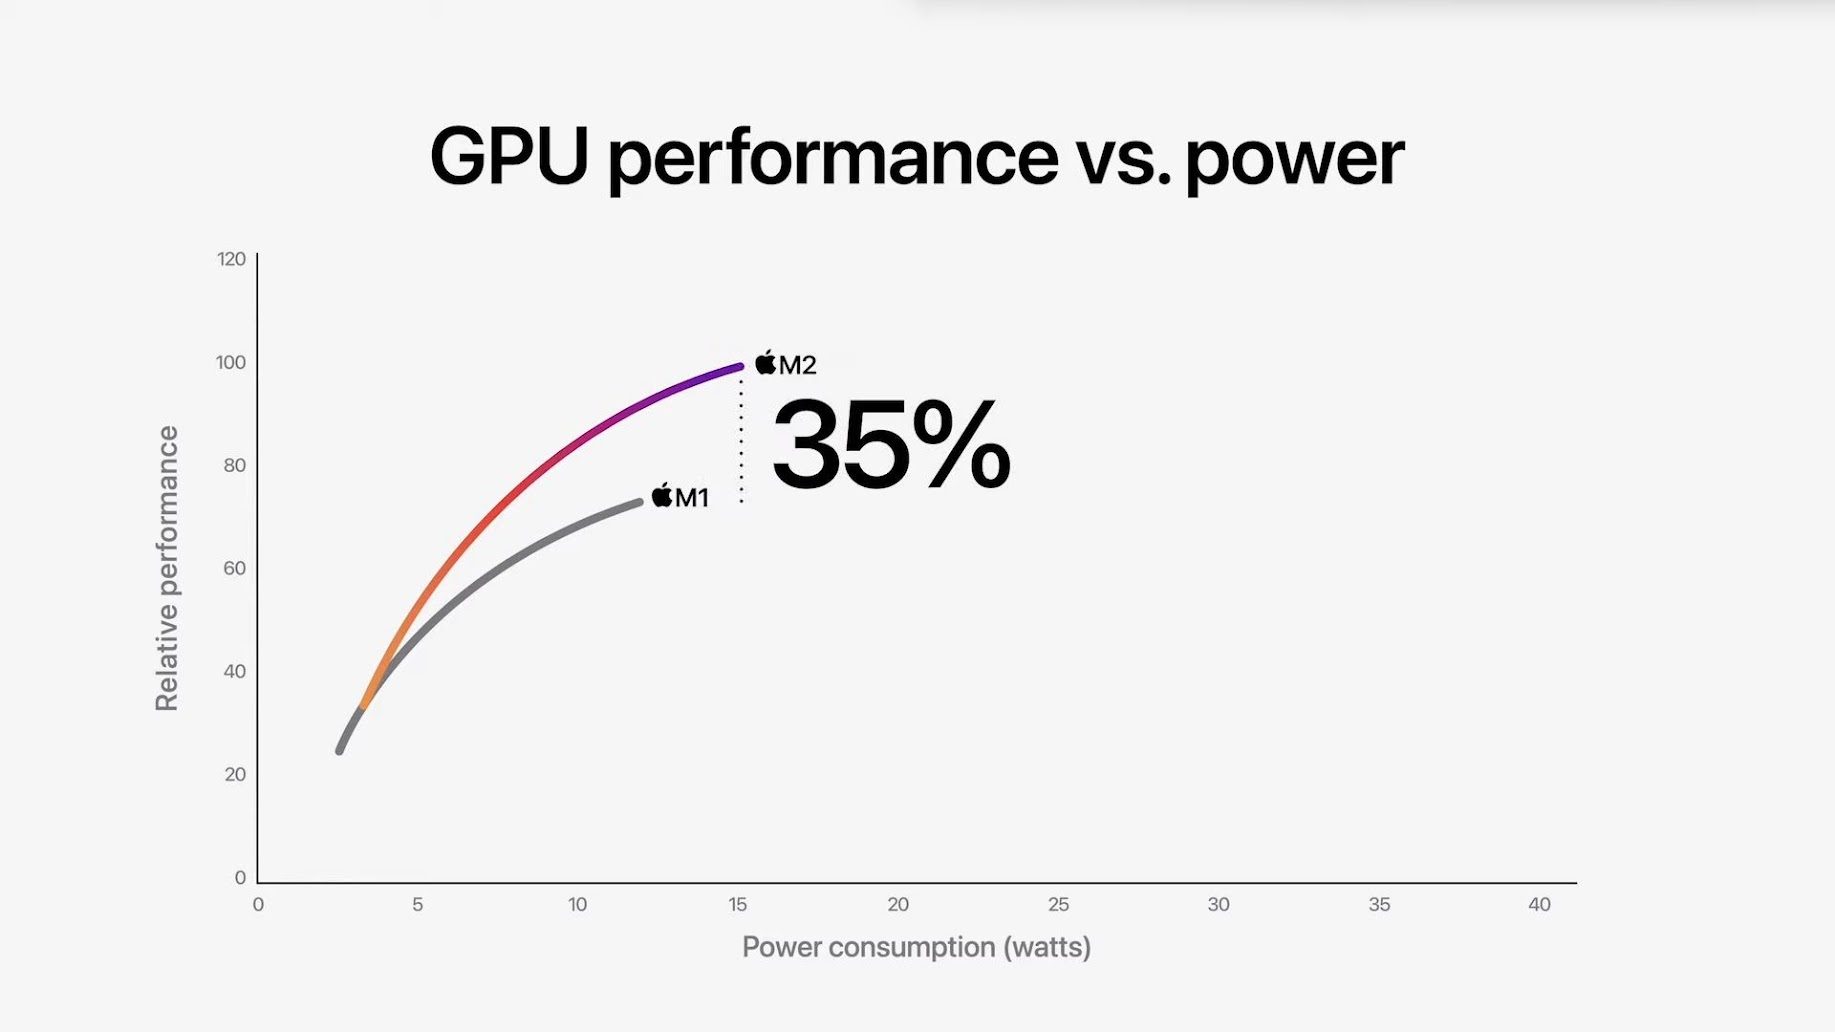 Le M2 promet de beaux gains en performances GPU par rapport au M1.